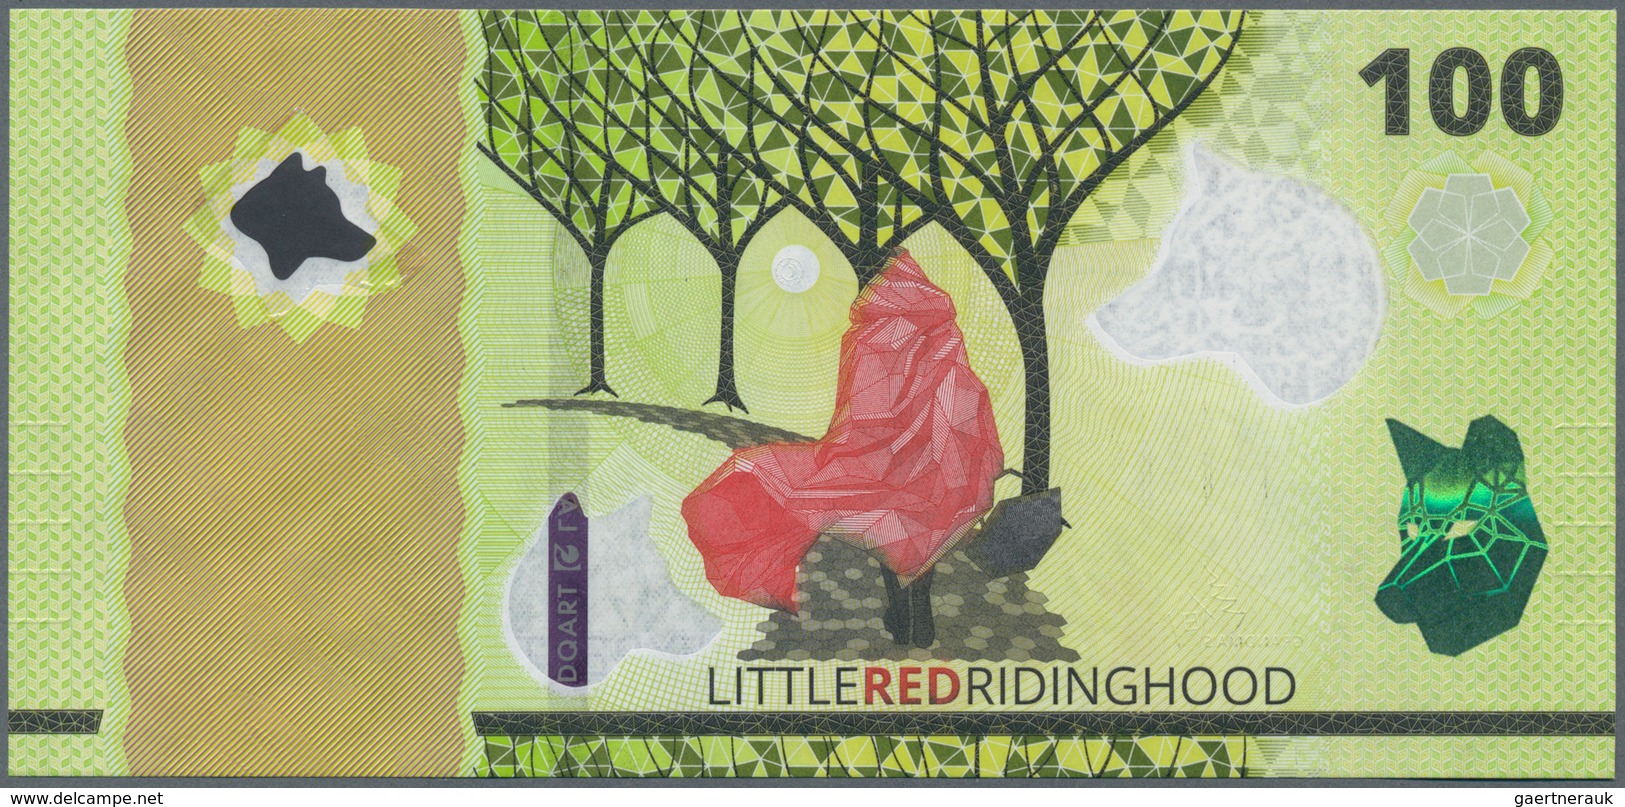 Testbanknoten: HYBRID Test Note "100 Little Red Ridinghood" On Durasafe Substrate By Landqart Switze - Fiktive & Specimen